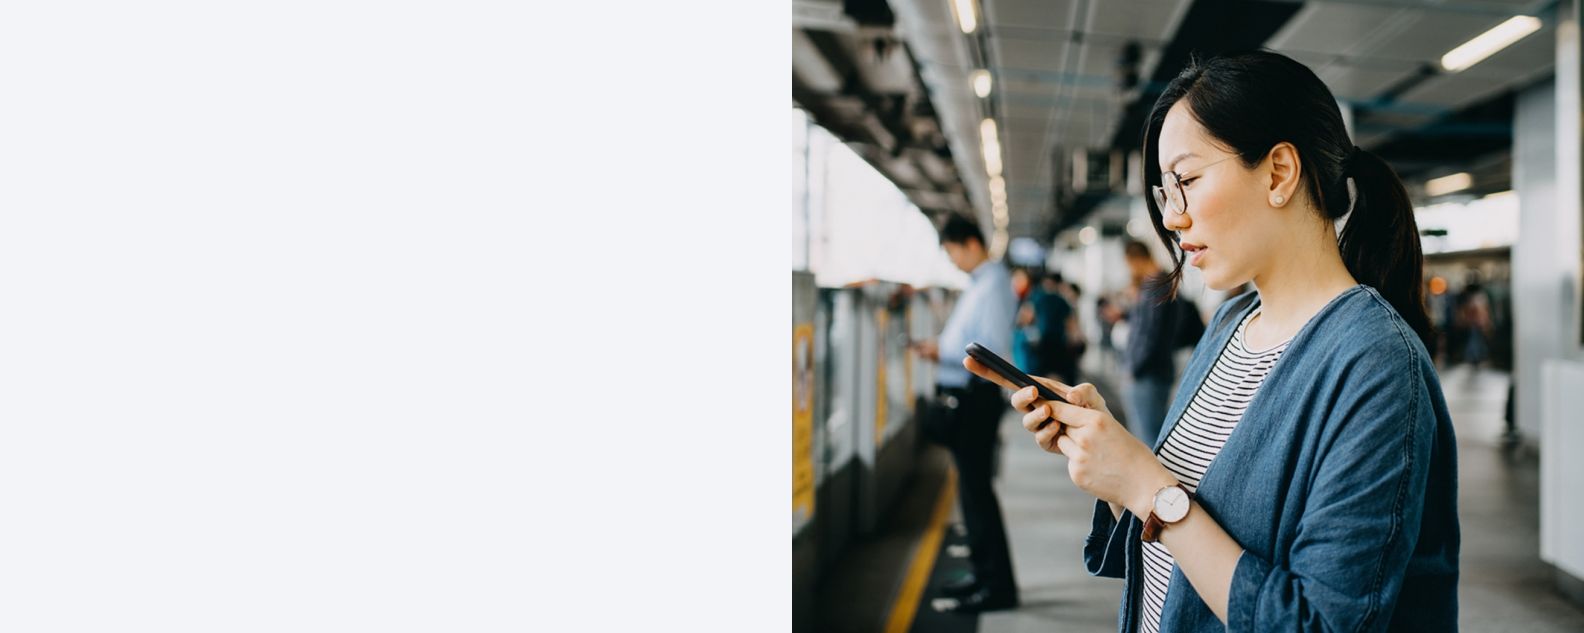 地下鉄駅のプラットフォームで携帯電話を使う若い女性